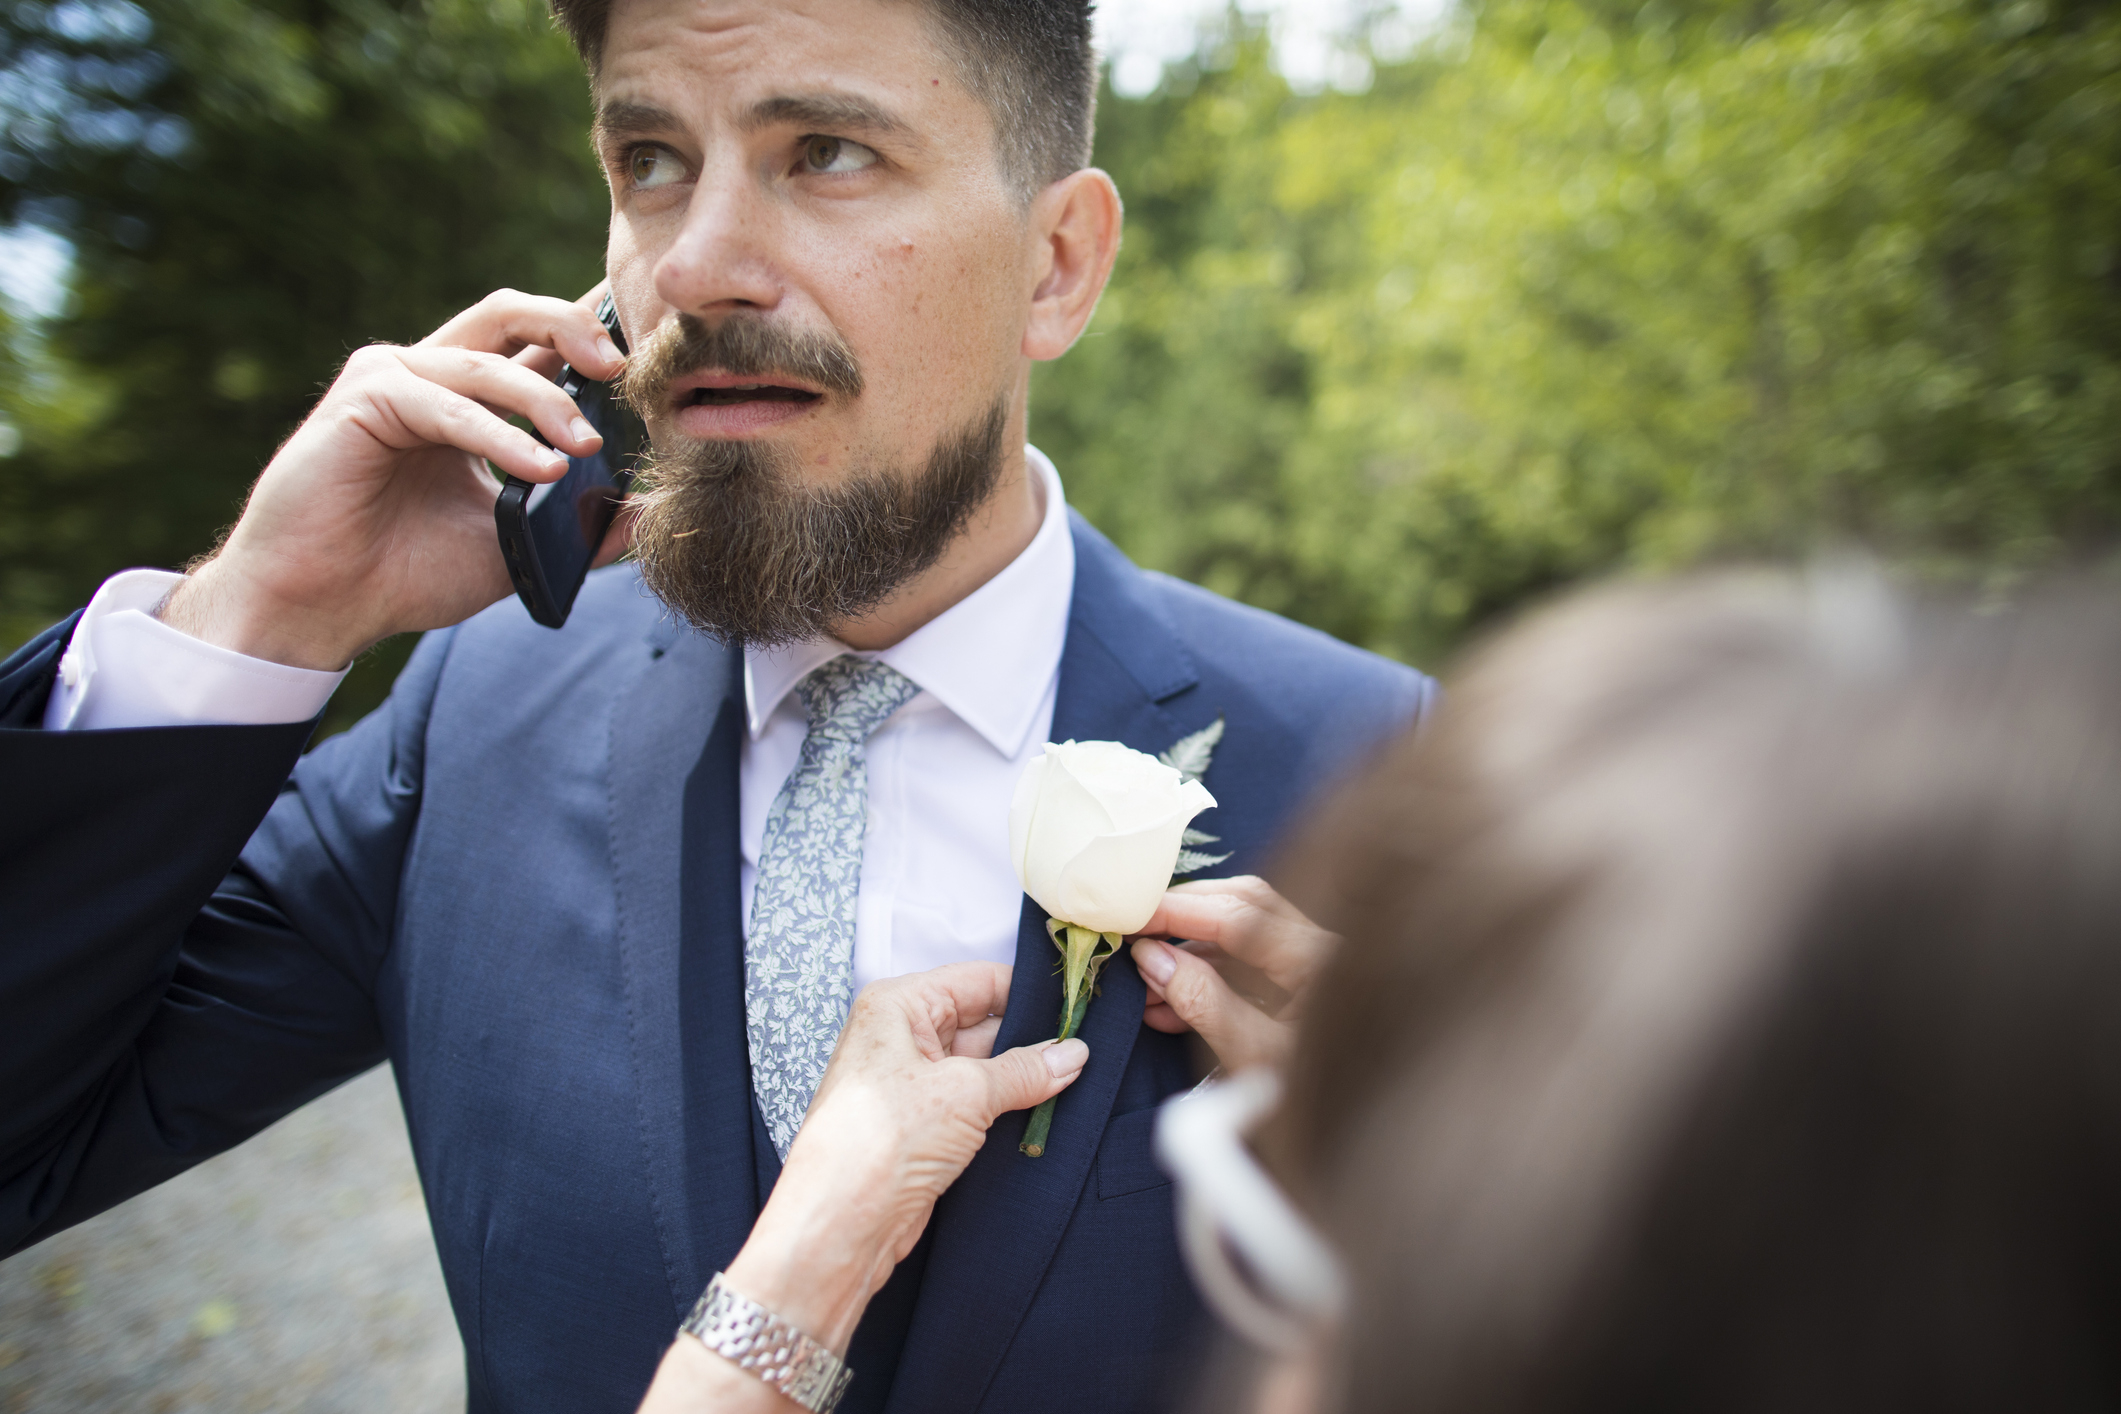 A groom on the phone